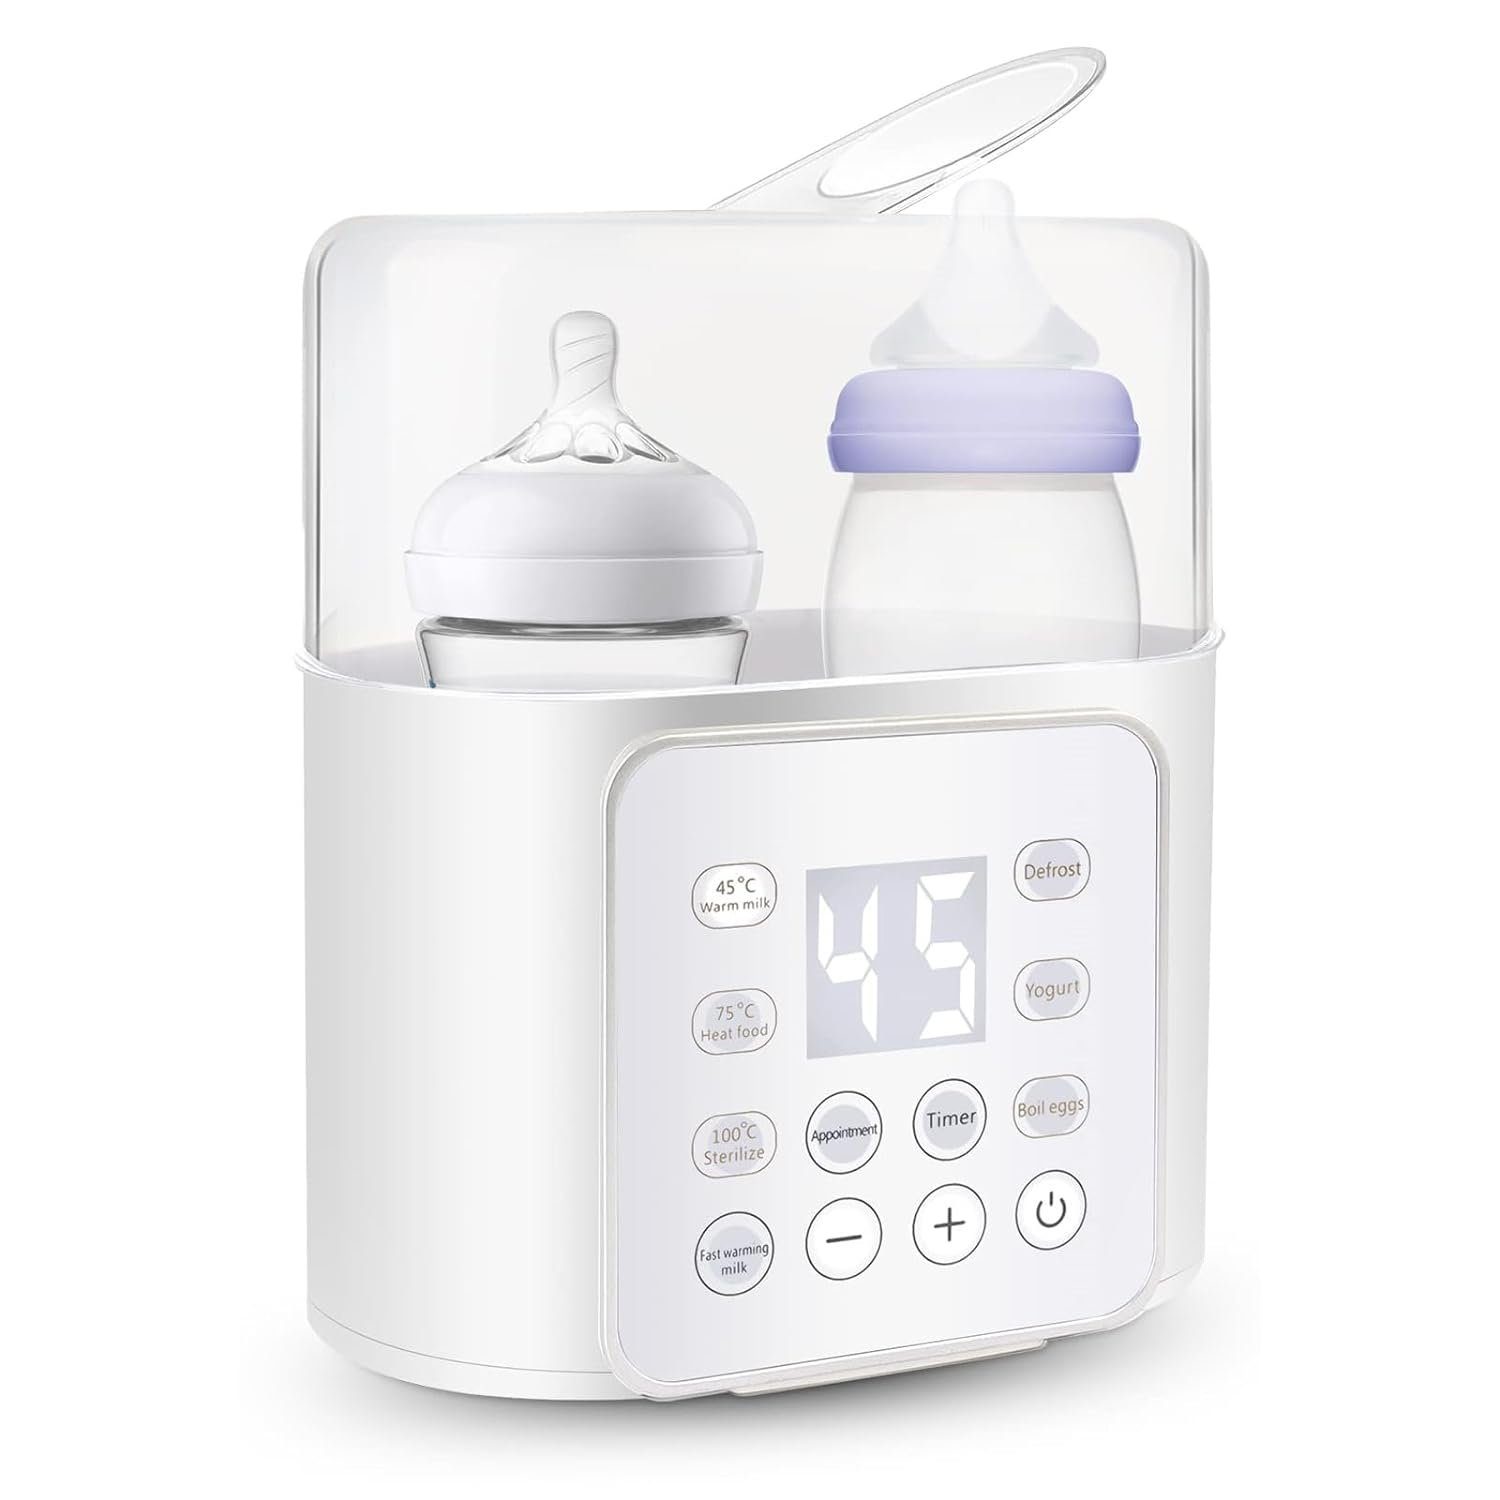 BlingBin Babyflaschenwärmer Baby 9-in-1 Fast Babynahrungsheizung und Abtauung, Babykostwärmer mit LED Bildschirm und Touch-Tasten für 2 Babyflaschen